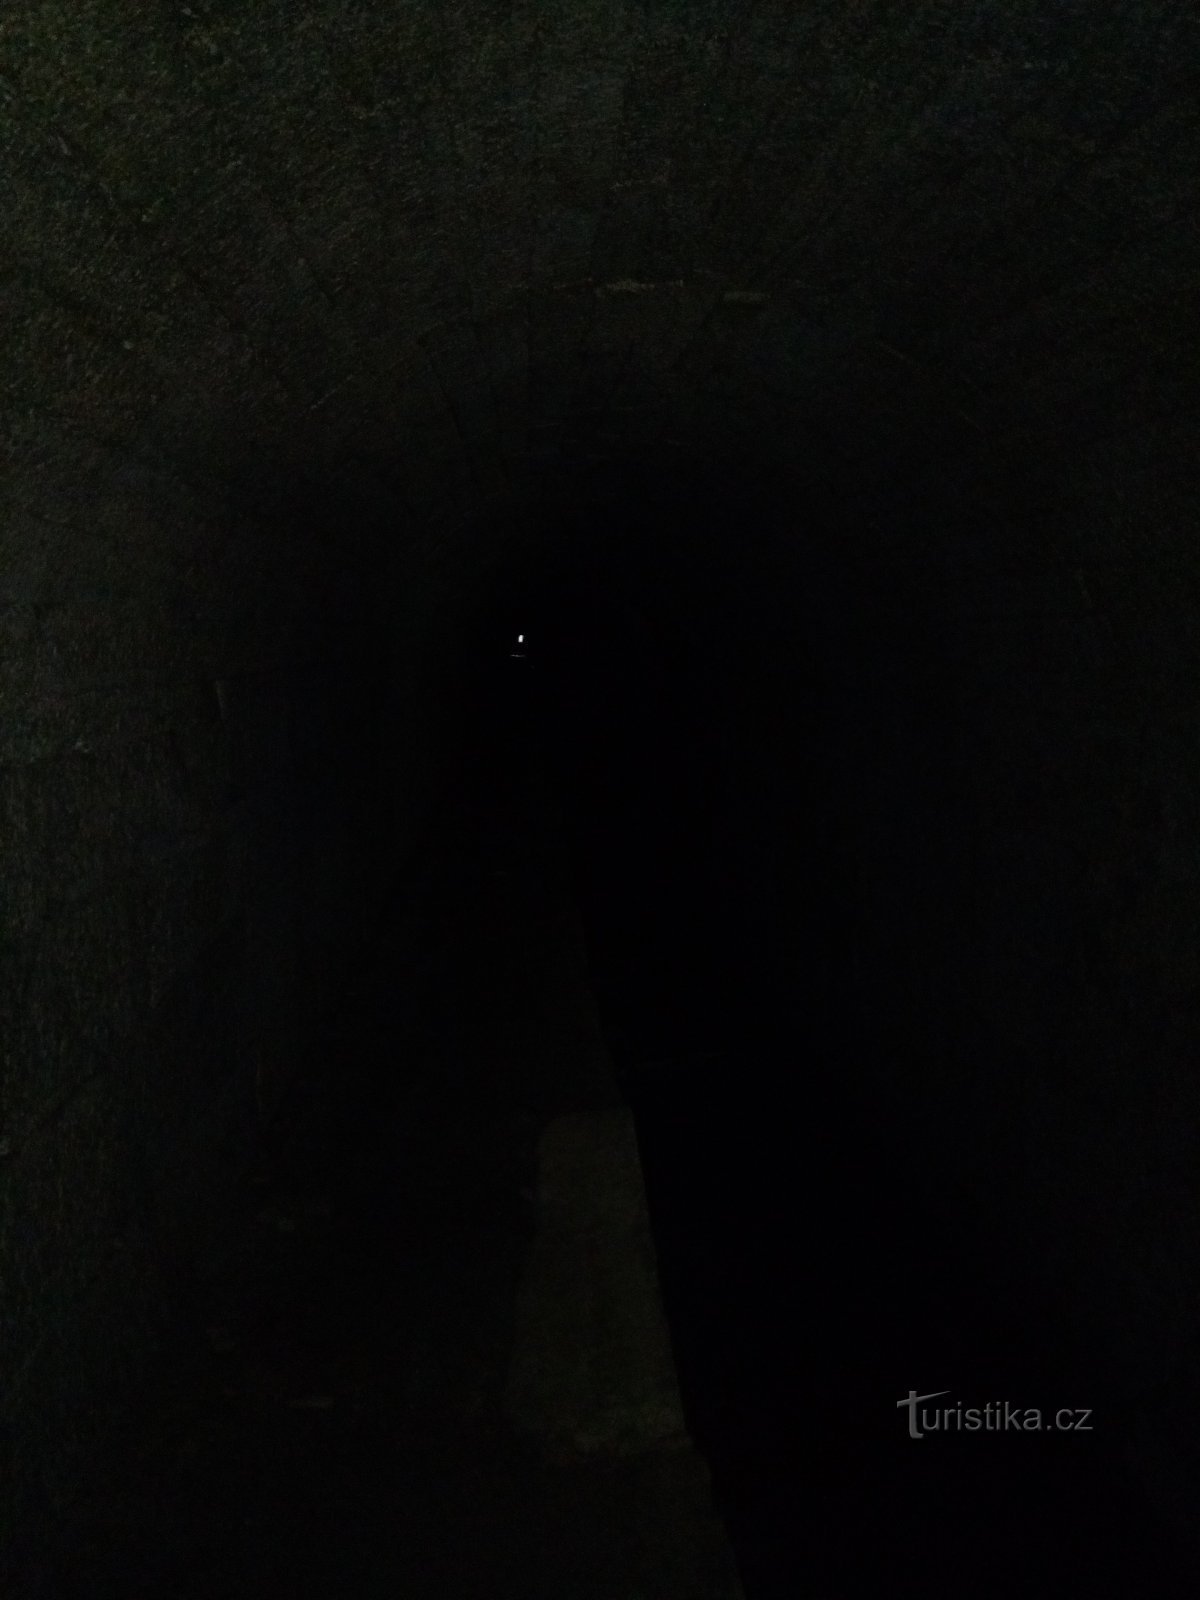 Svjetlo na kraju tunela